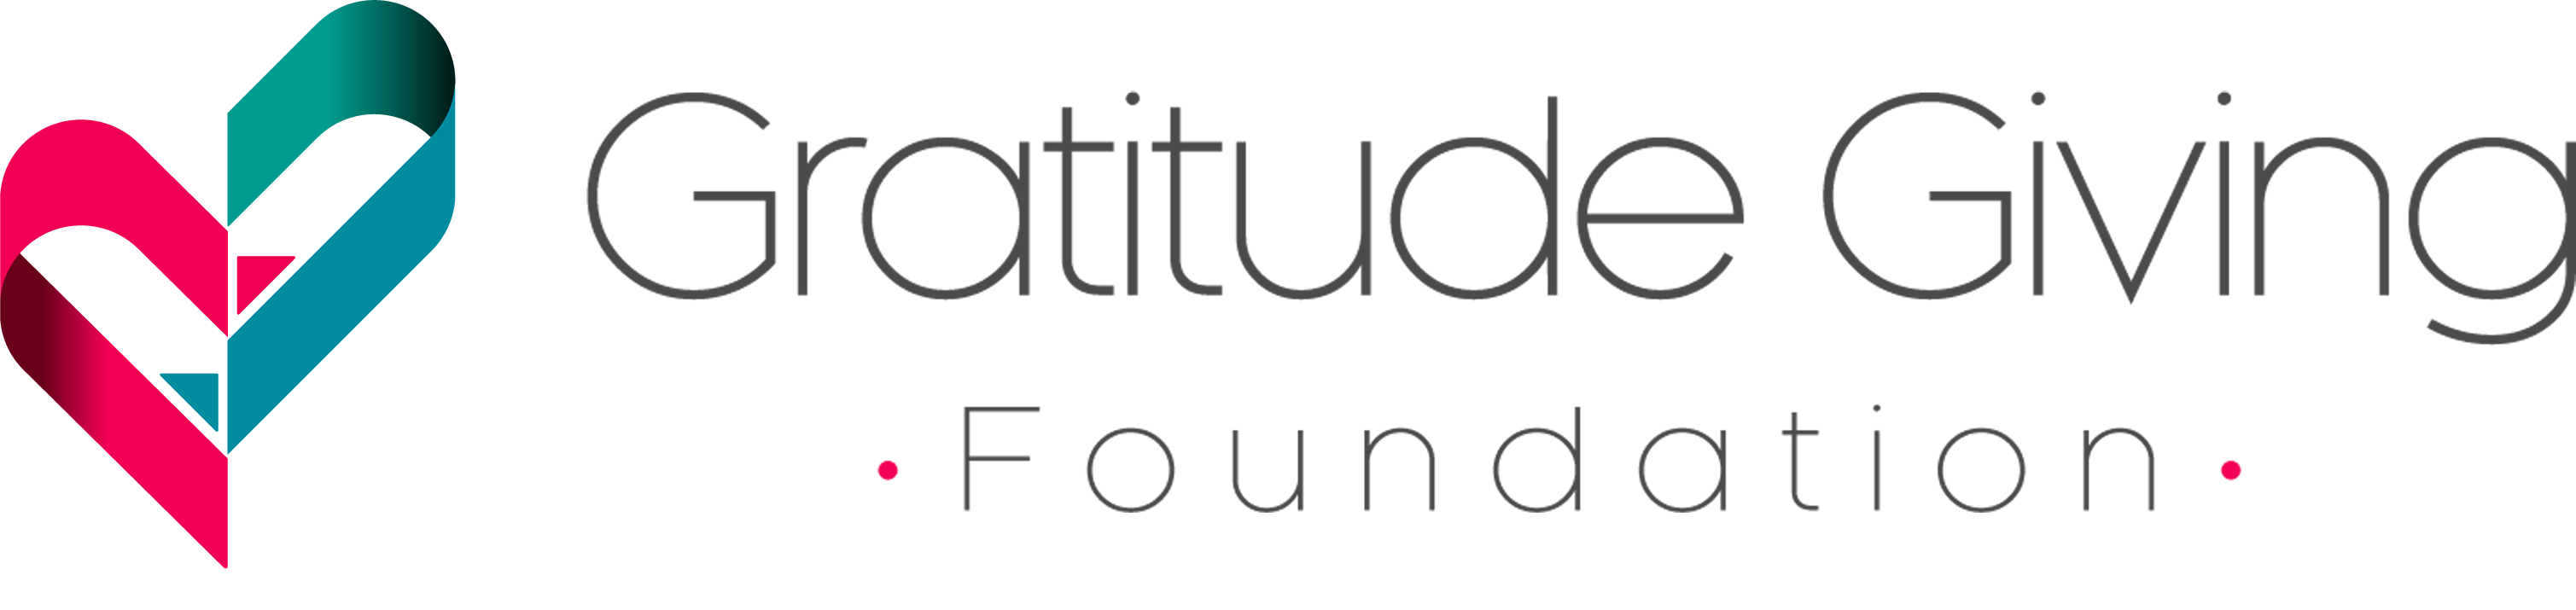 Gratitude Giving Foundatio